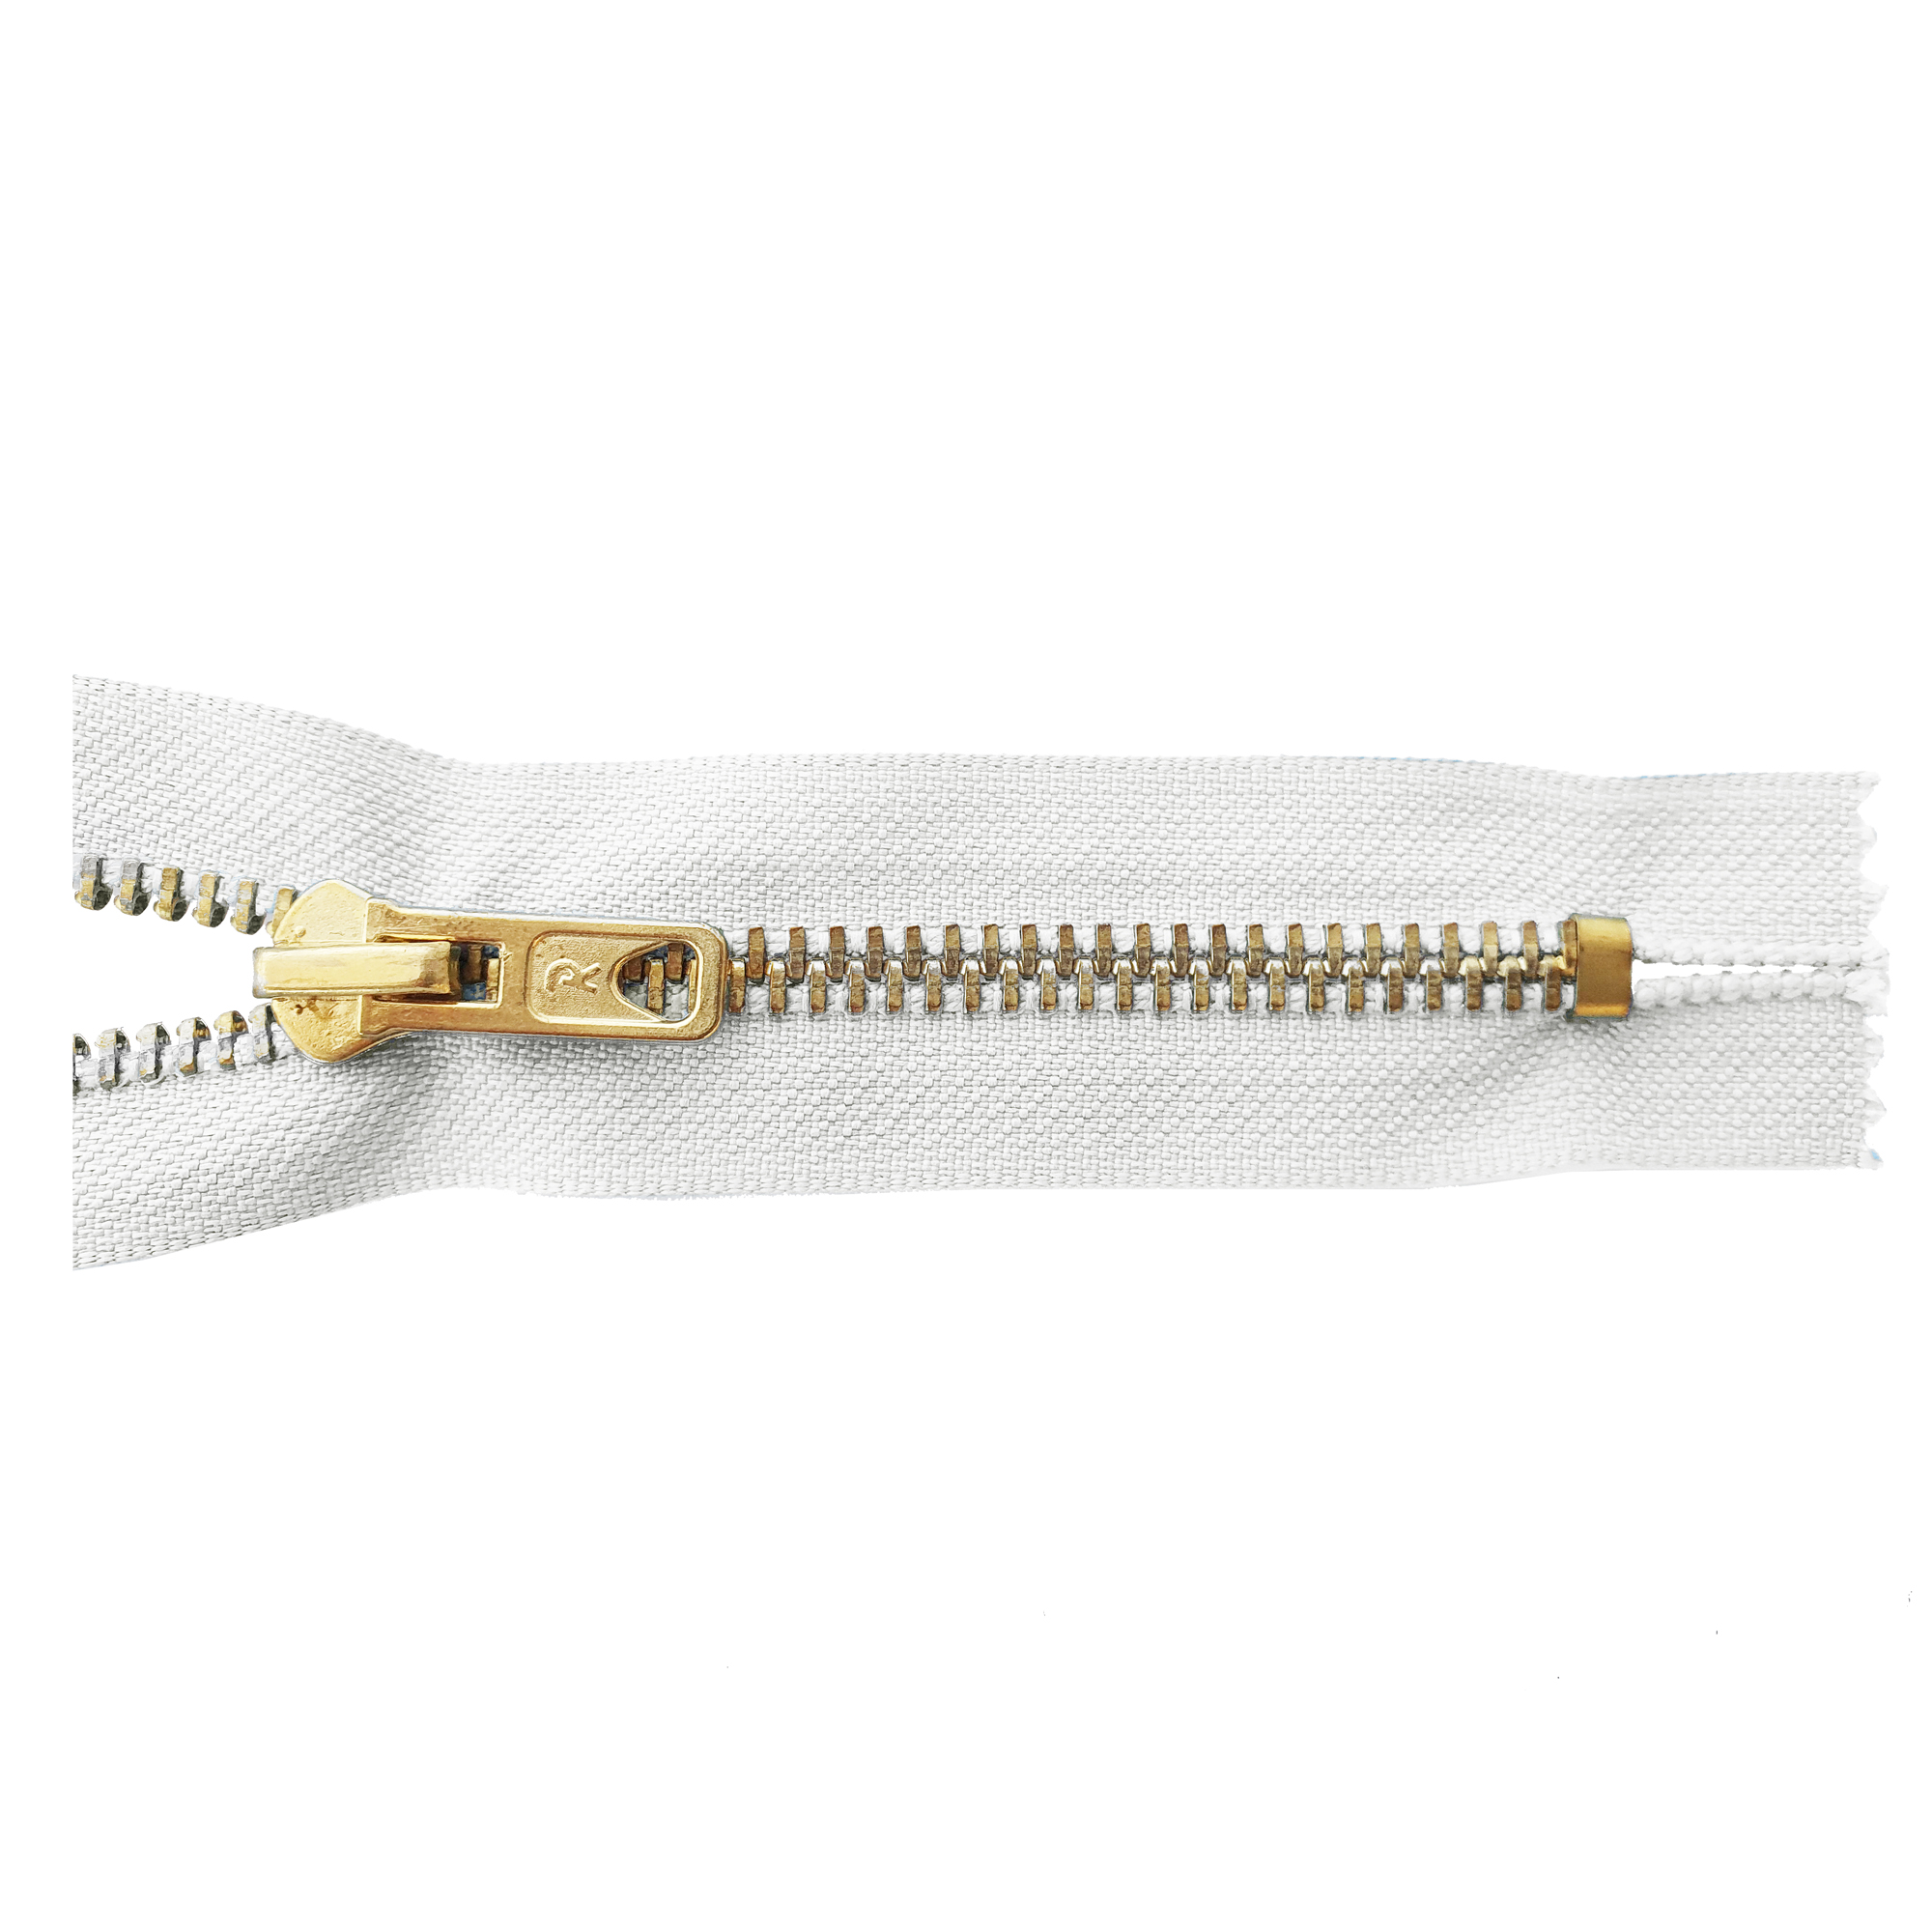 Reißverschluss 12cm, nicht teilbar, Metall goldf. breit, reinweiß, hochwertiger Marken-Reißverschluss von Rubi/Barcelona